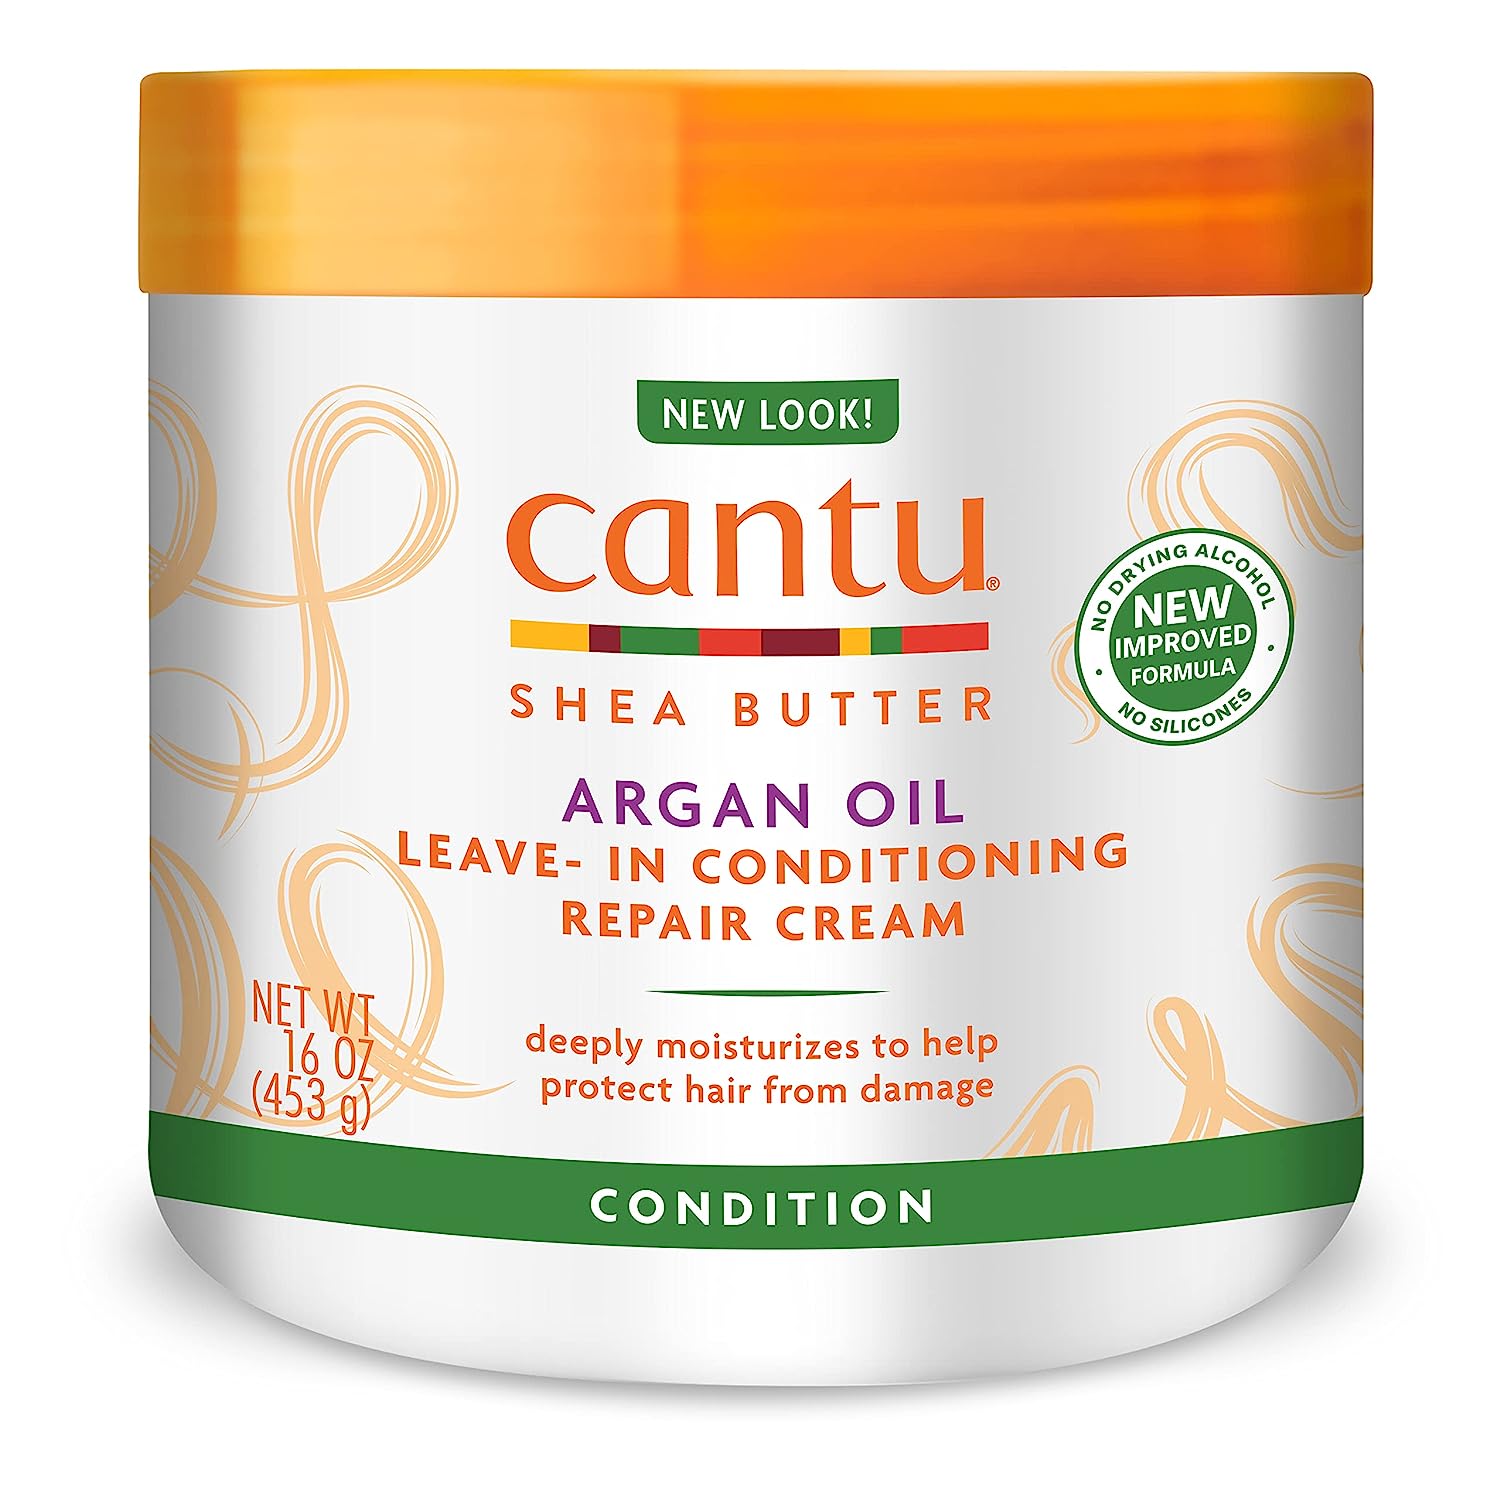 Cantu Leave-In Conditioning Repair Cream with Argan [...]